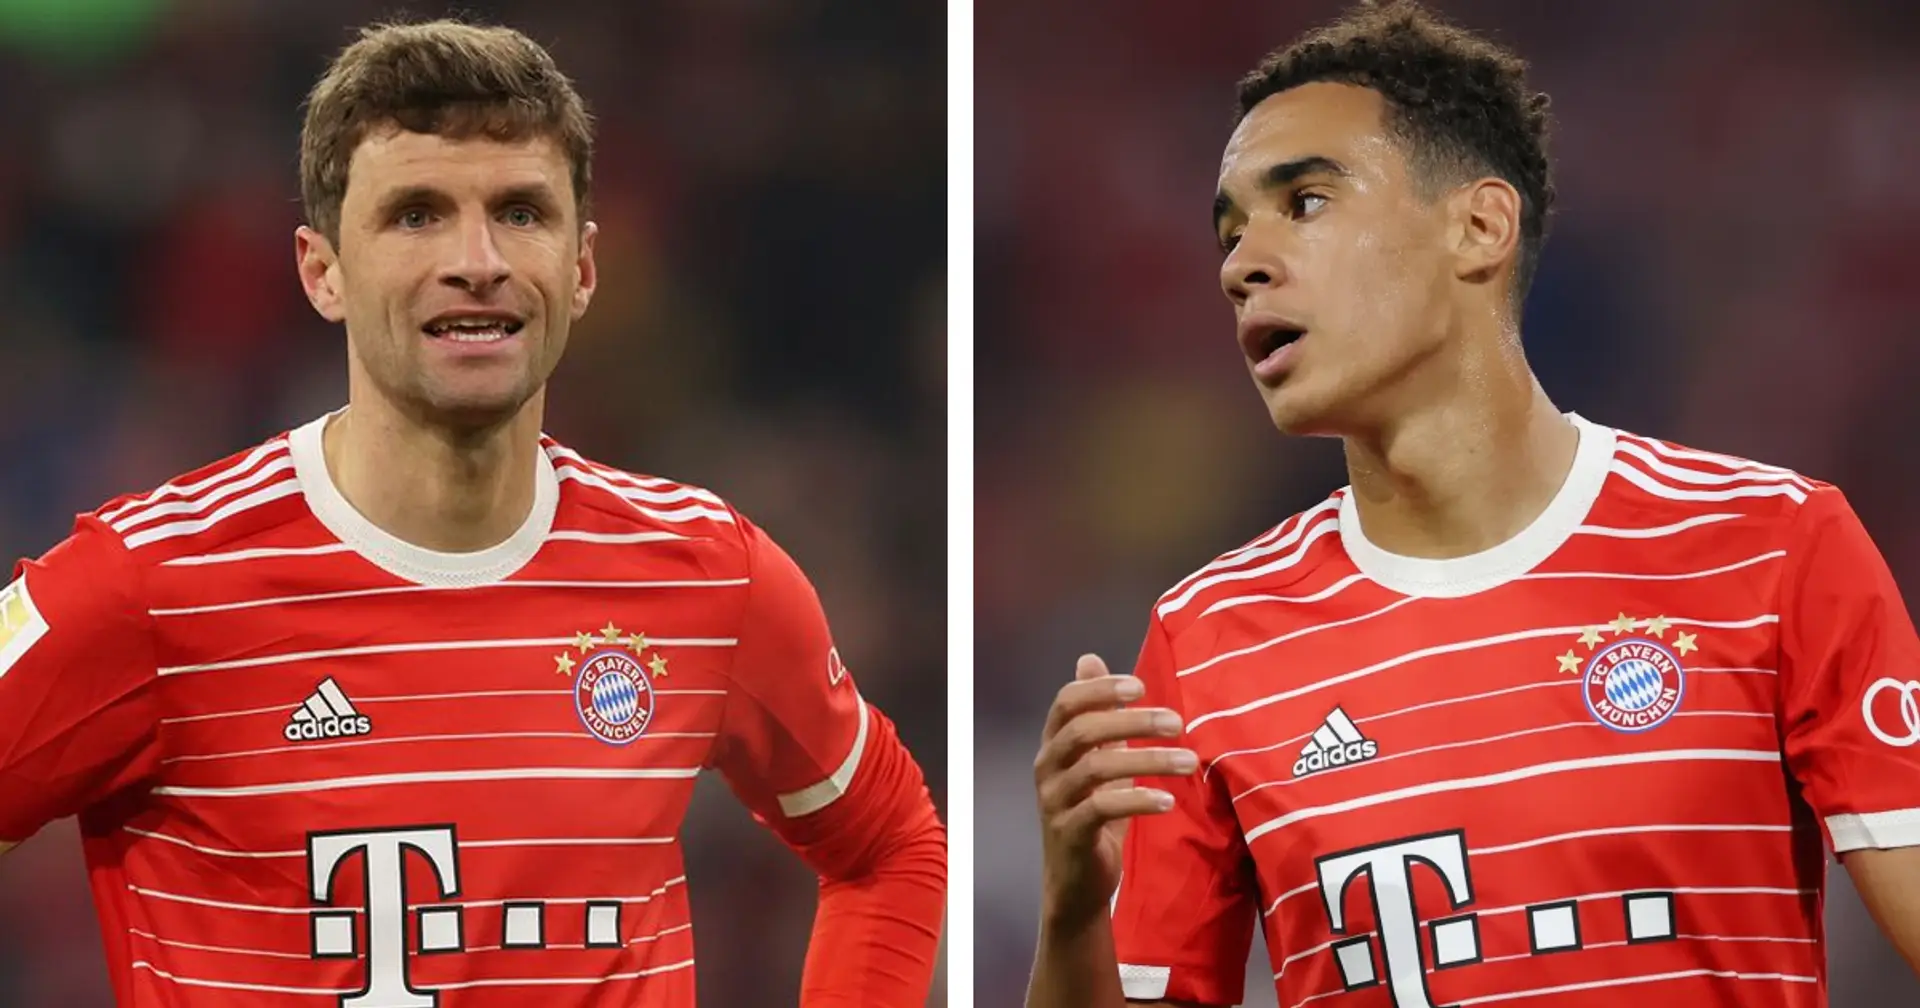 Musiala setzte sich bei der Bayern-Sitzung vor Nagelsmann für Müller ein: Team will Jamal und Thomas zusammen spielen lassen